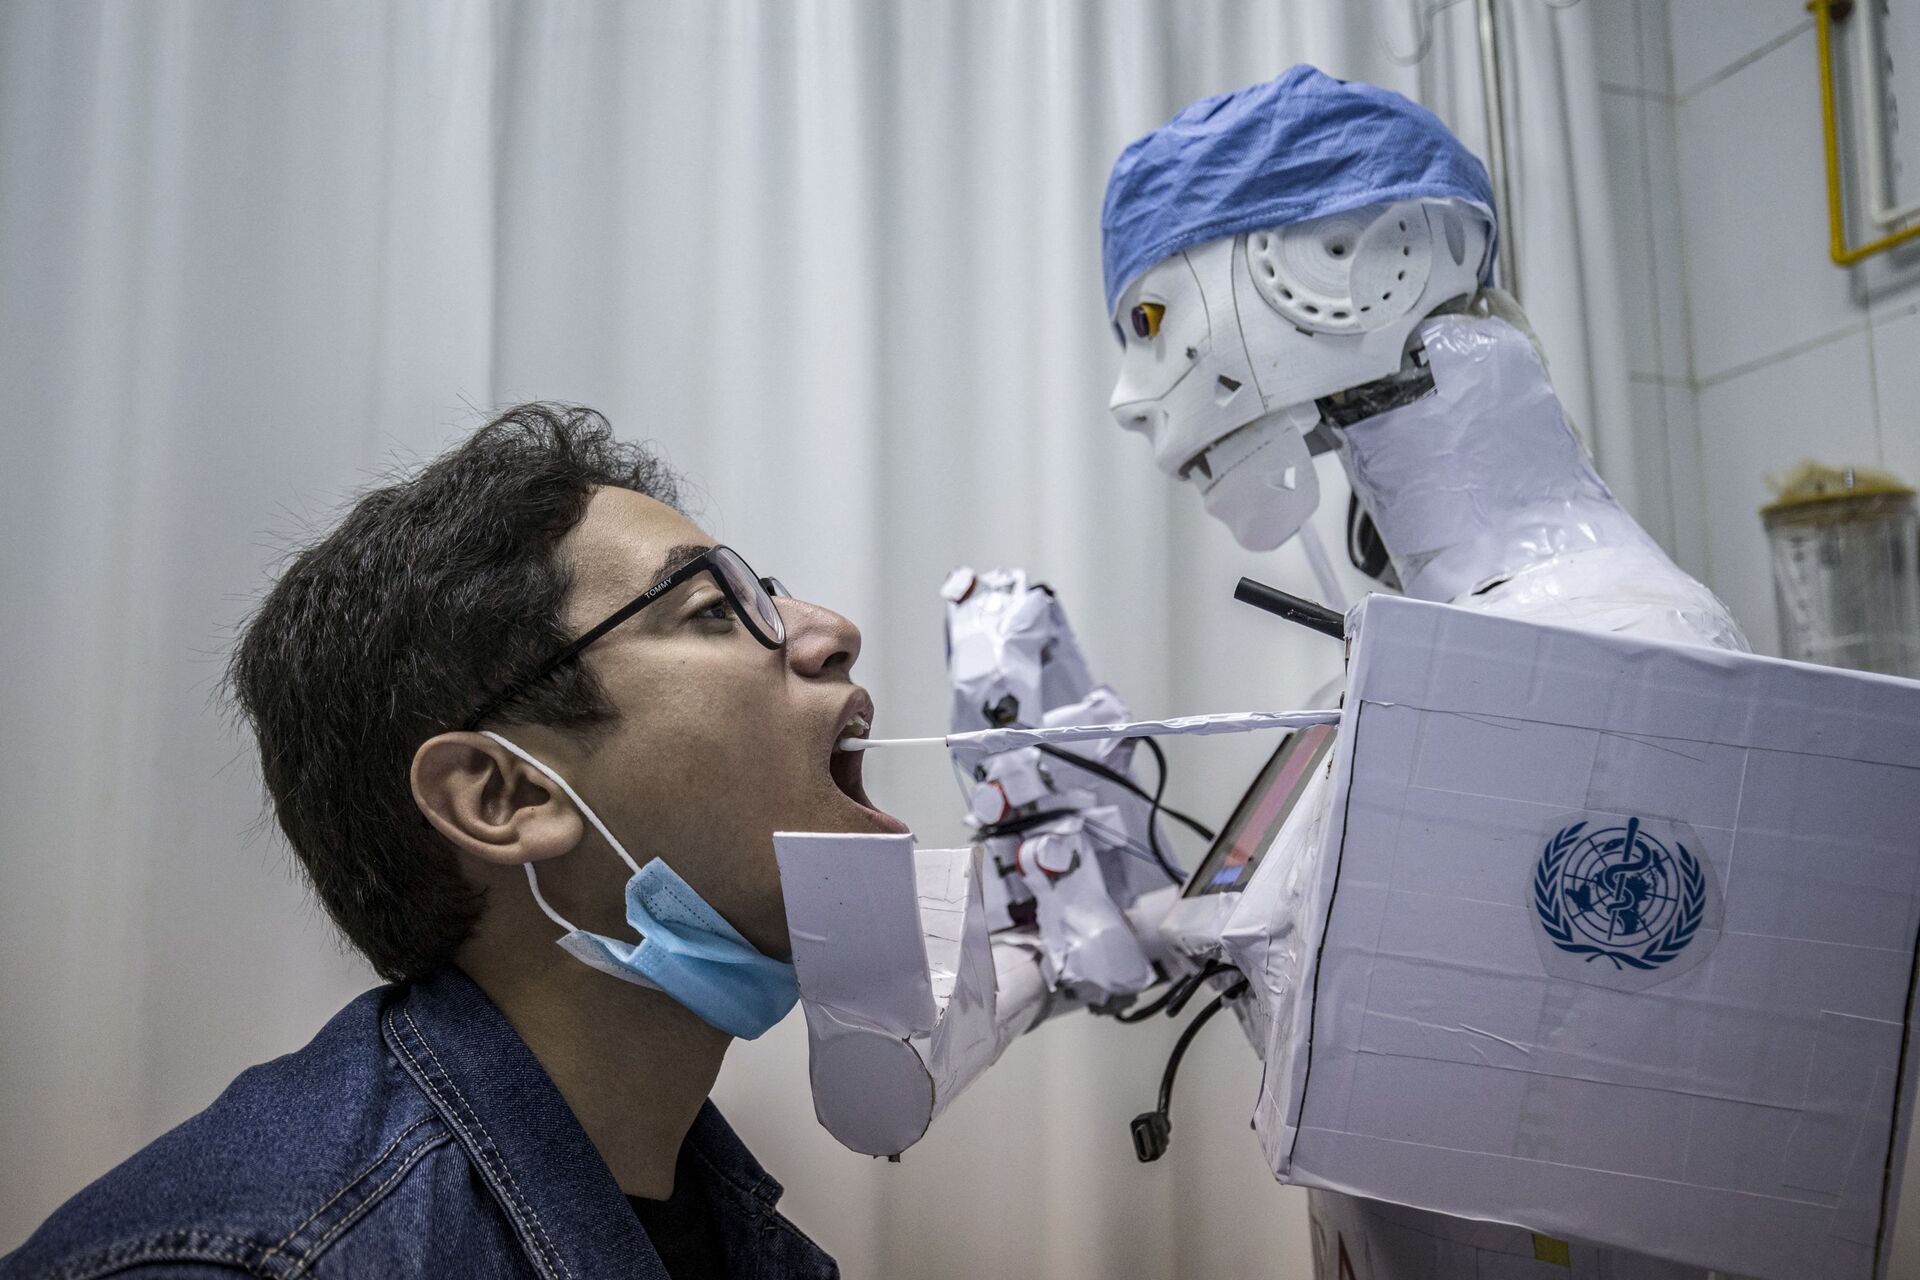 Avanços na tecnologia e criação de robôs podem ameaçar mão de obra humana? - Sputnik Brasil, 1920, 12.07.2021